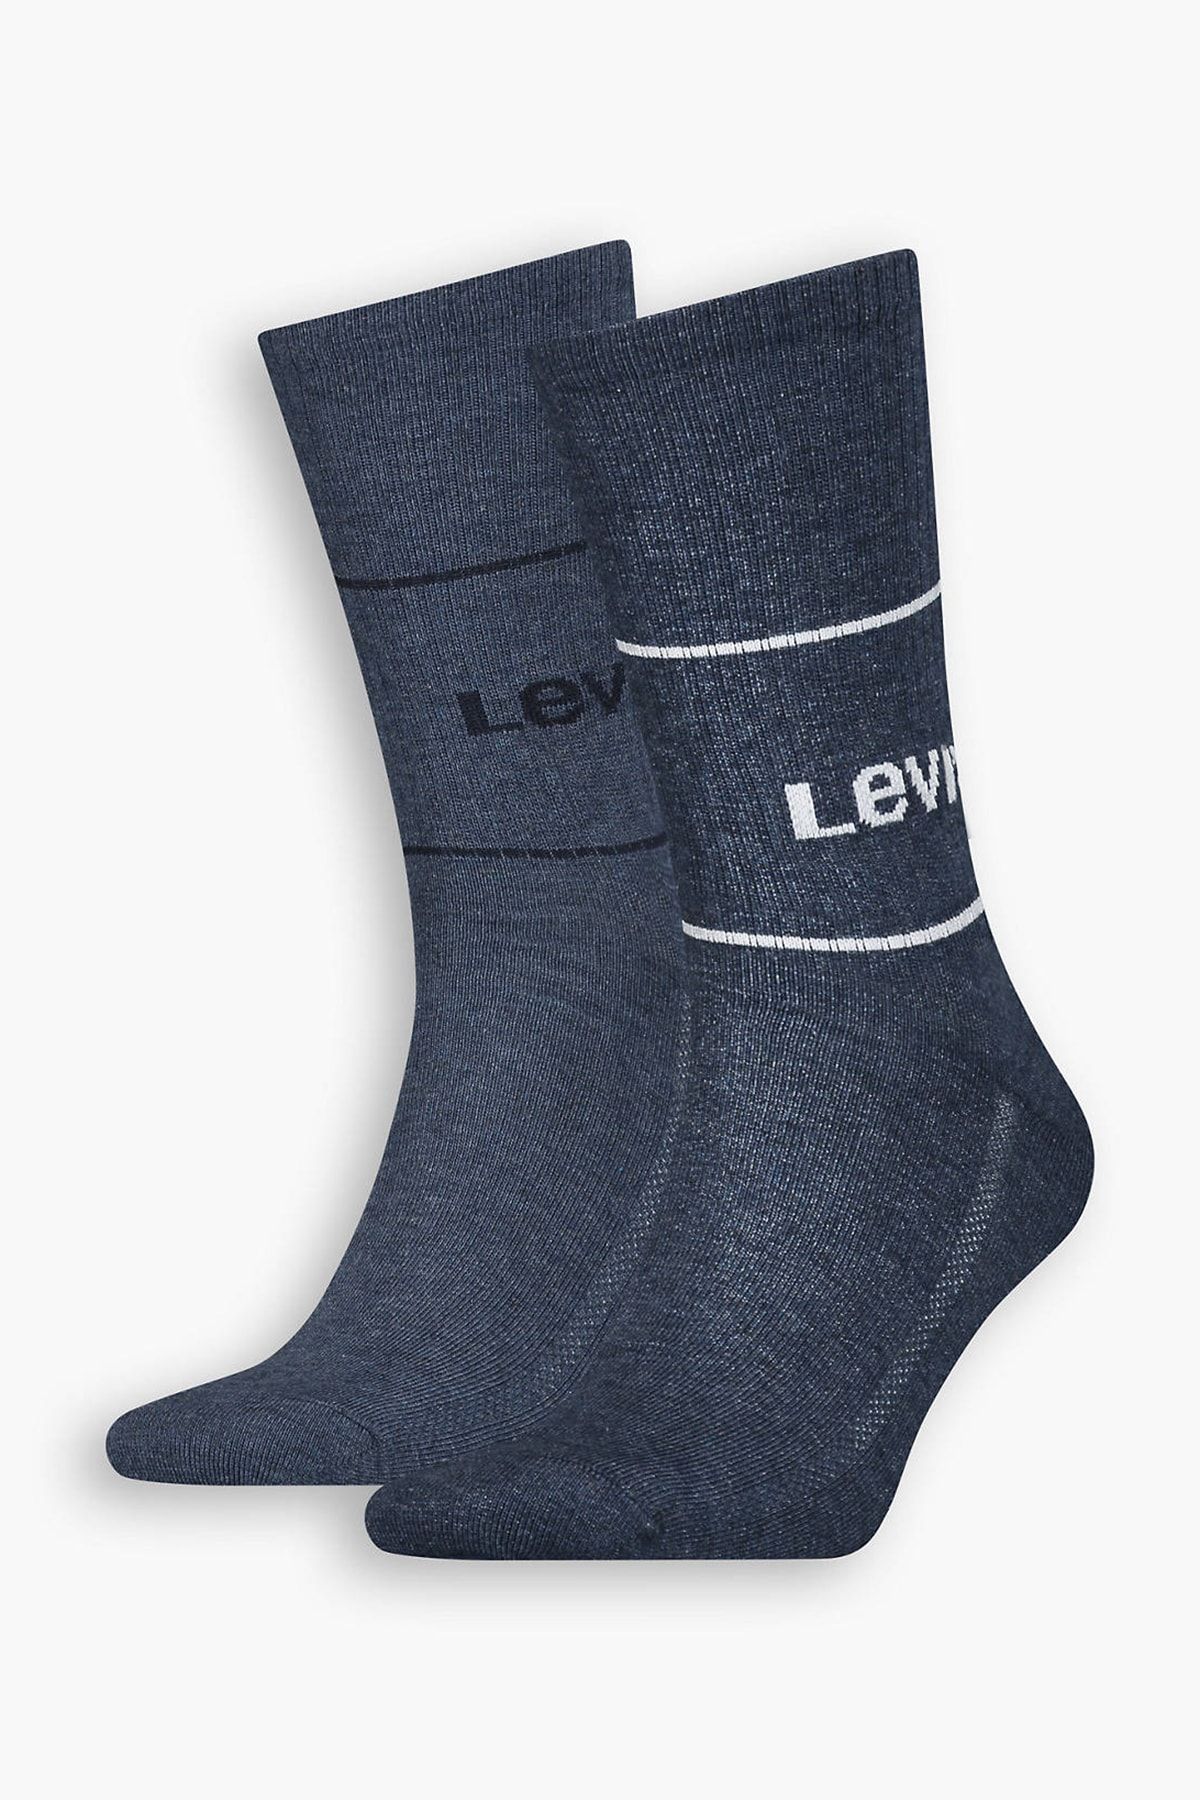 Levi's Organik Pamuklu 2 Pack Uzun Çorap Erkek Çorap 37157